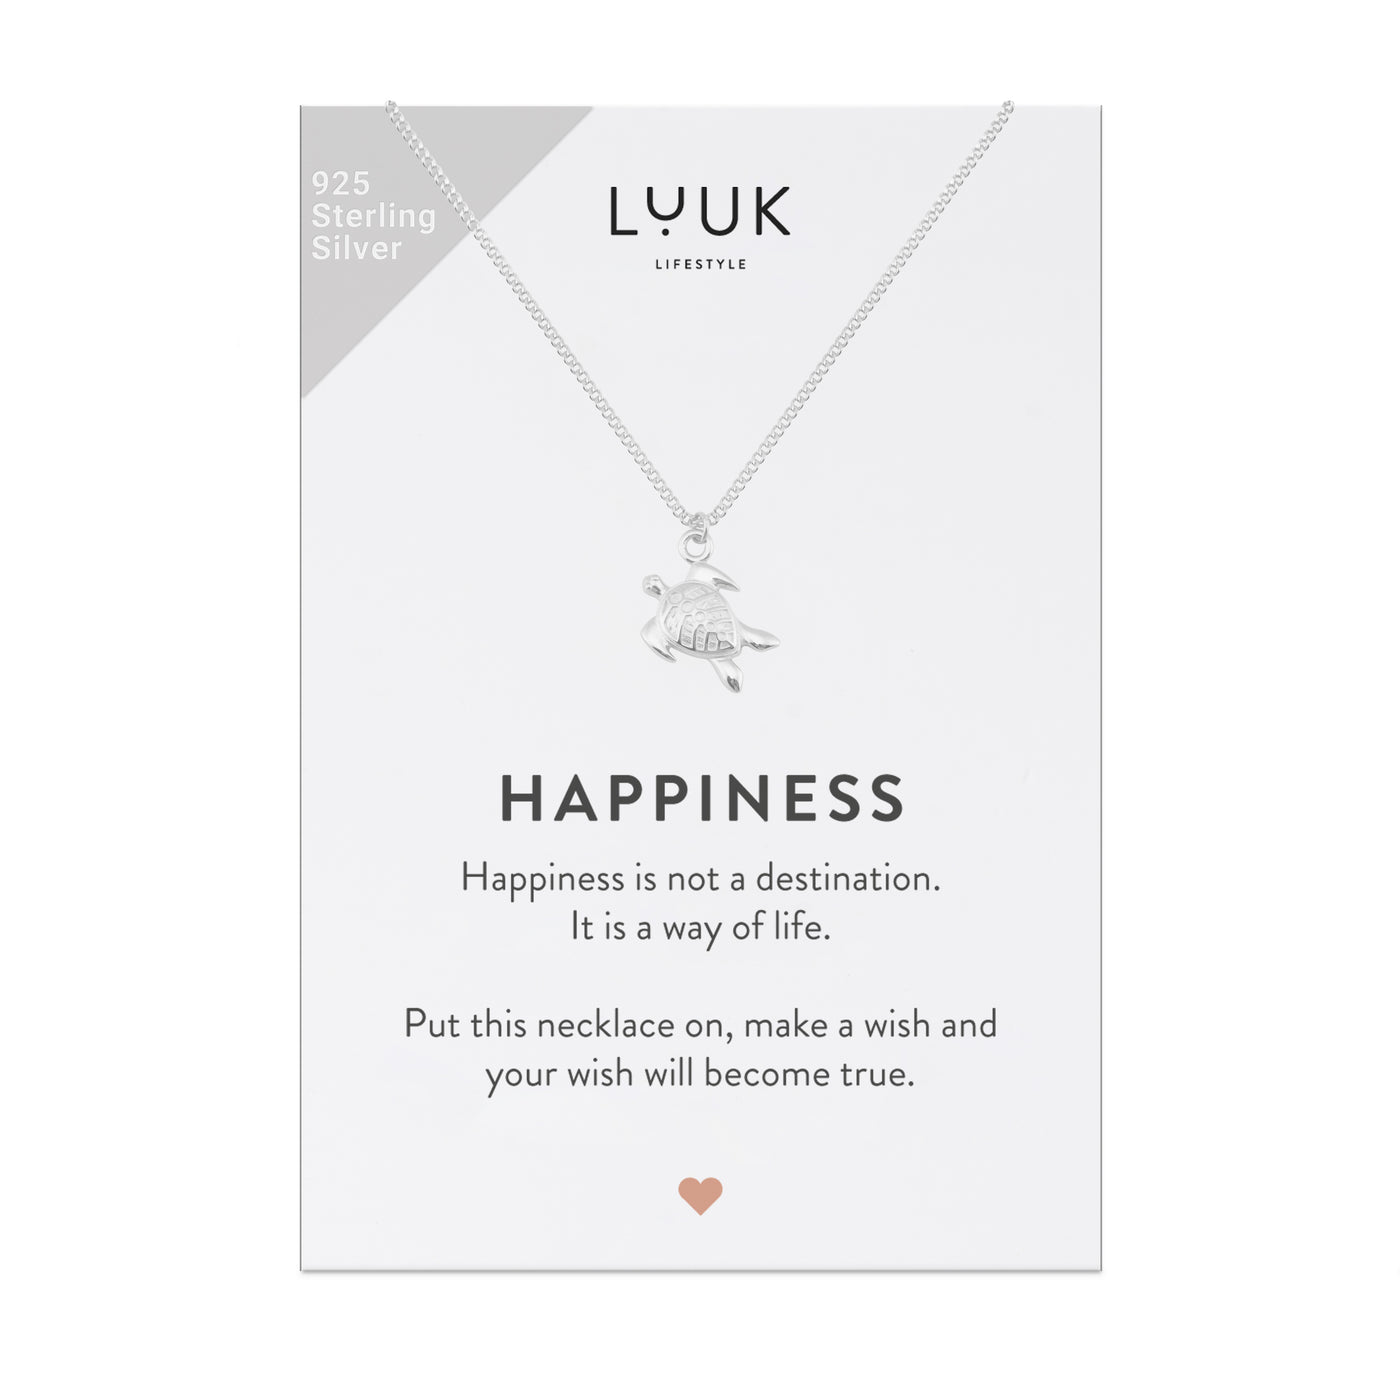 Silberne Halskette mit Schildkröten Anhänger auf Happiness Karte von der Marke Luuk Lifestyle